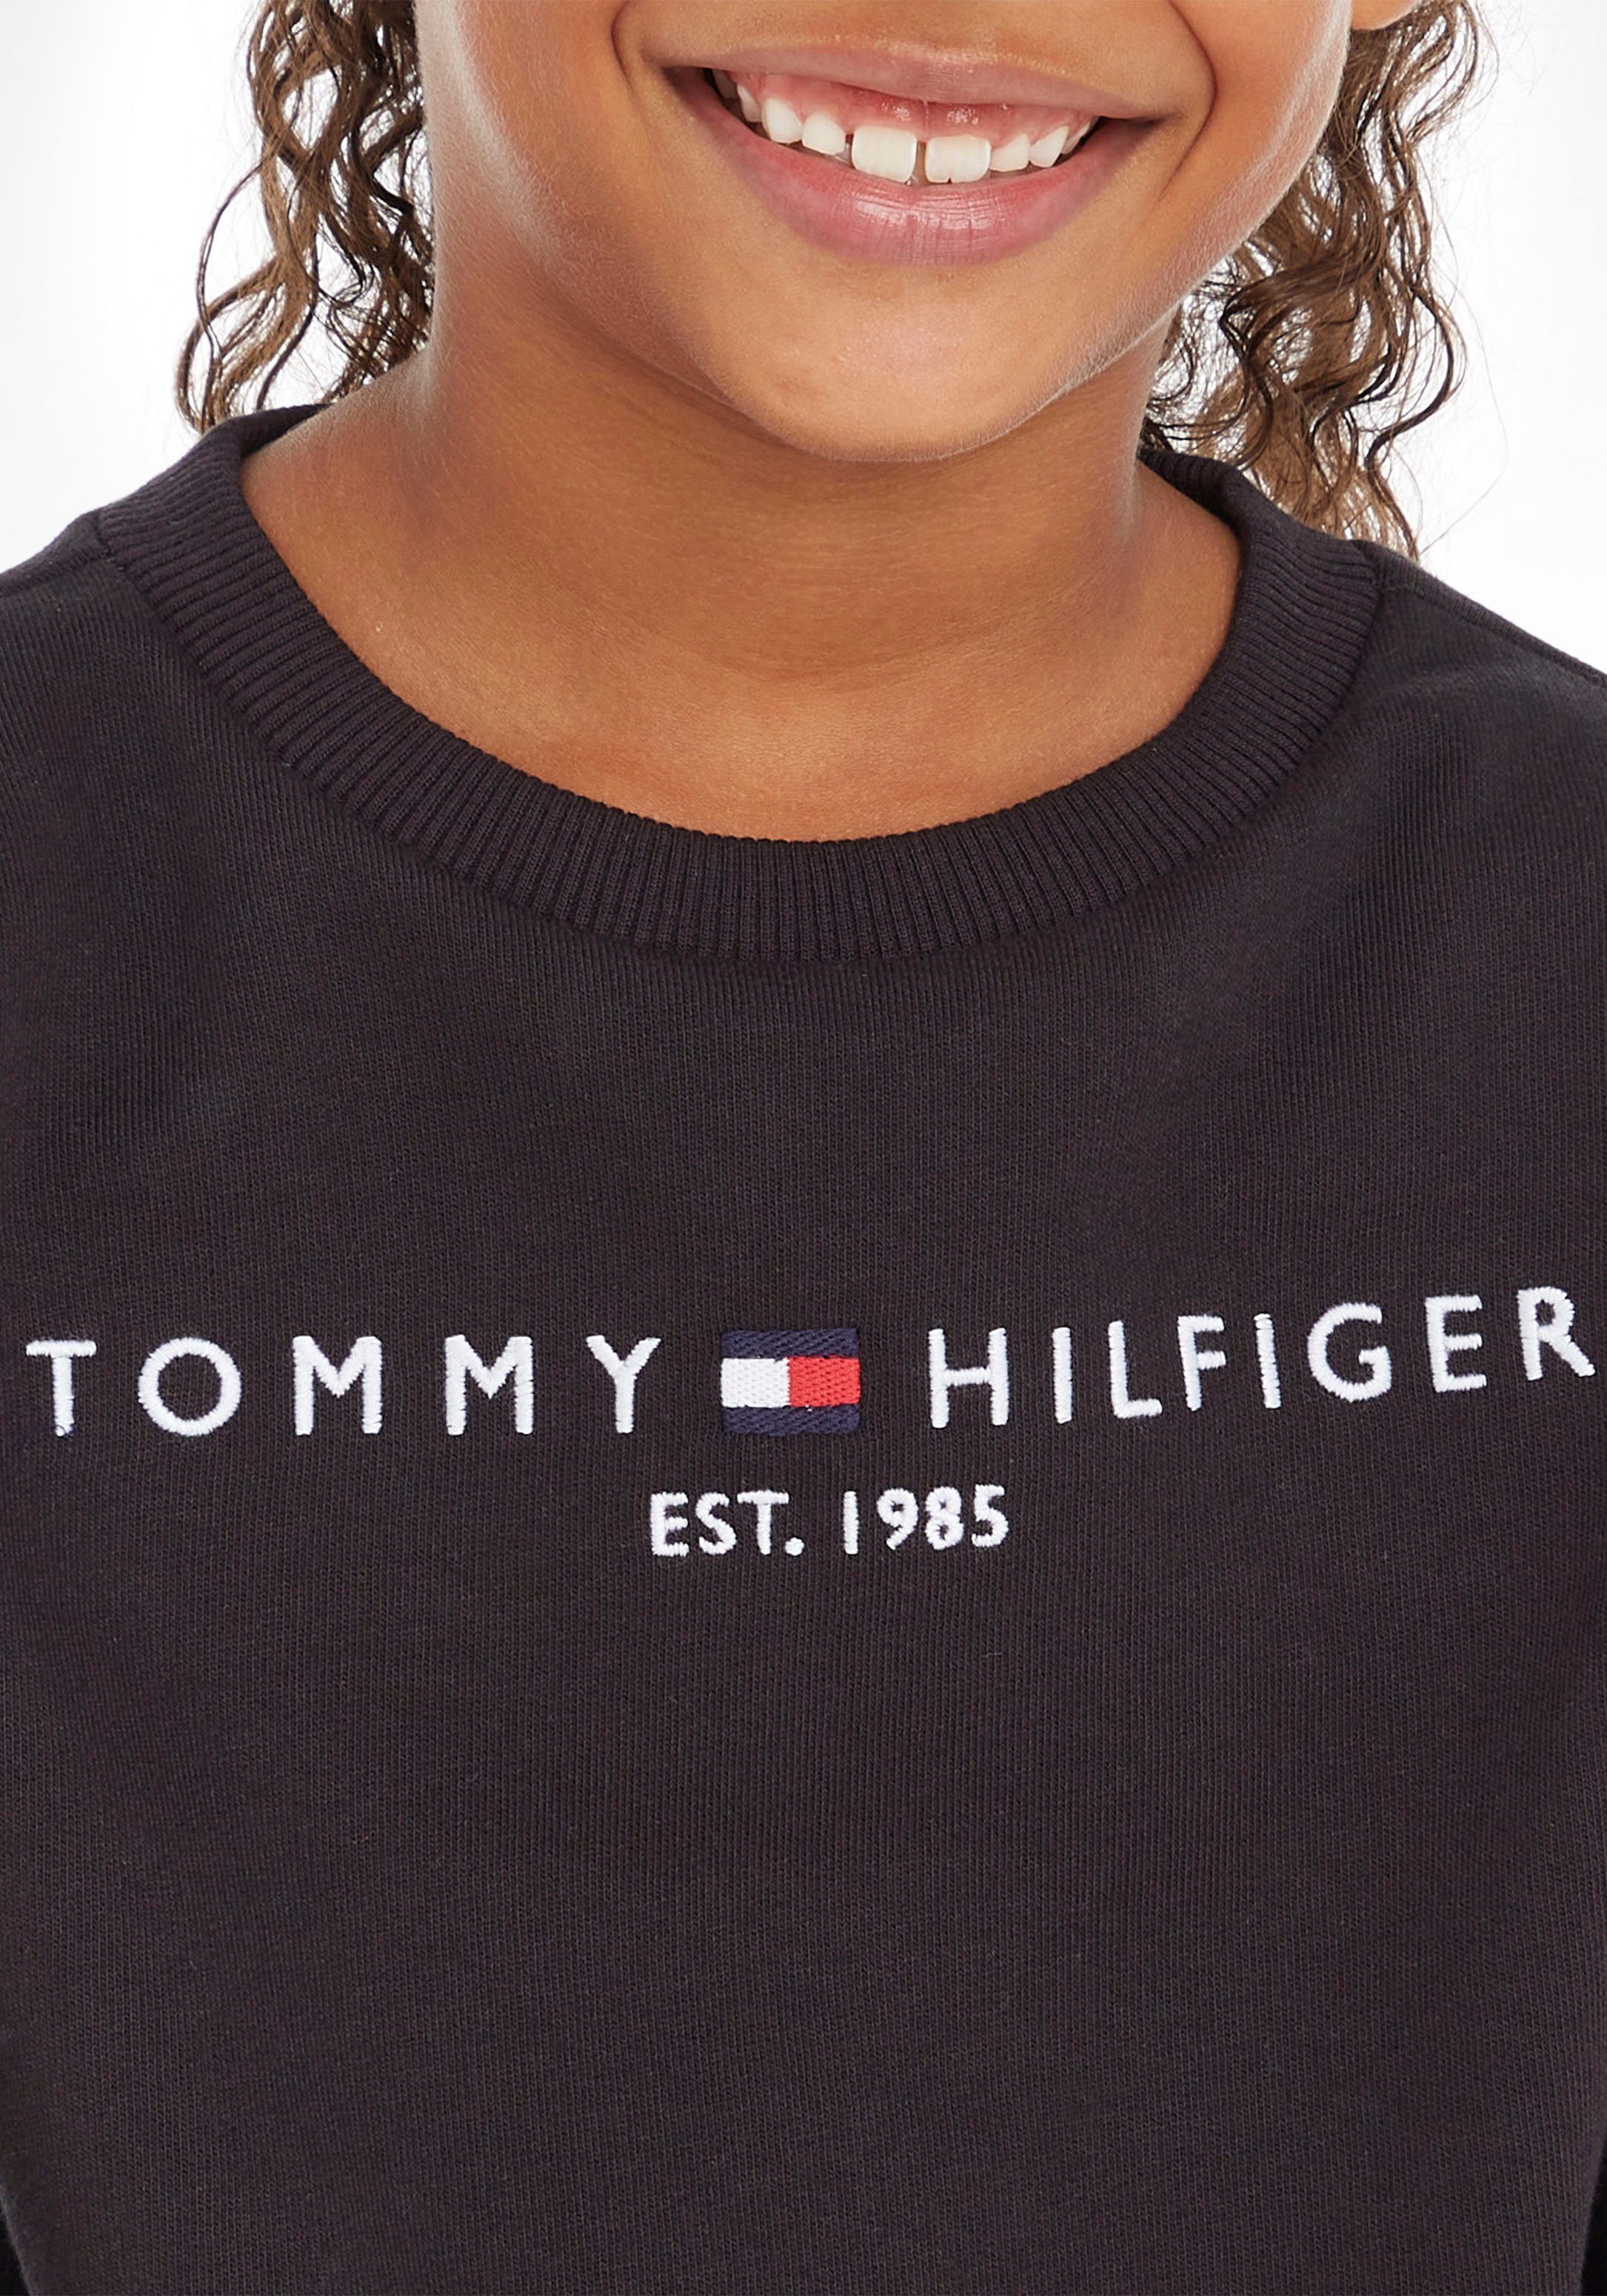 Sweatshirt SWEATSHIRT Kids Mädchen Tommy Hilfiger ESSENTIAL Jungen MiniMe,für Junior und Kinder